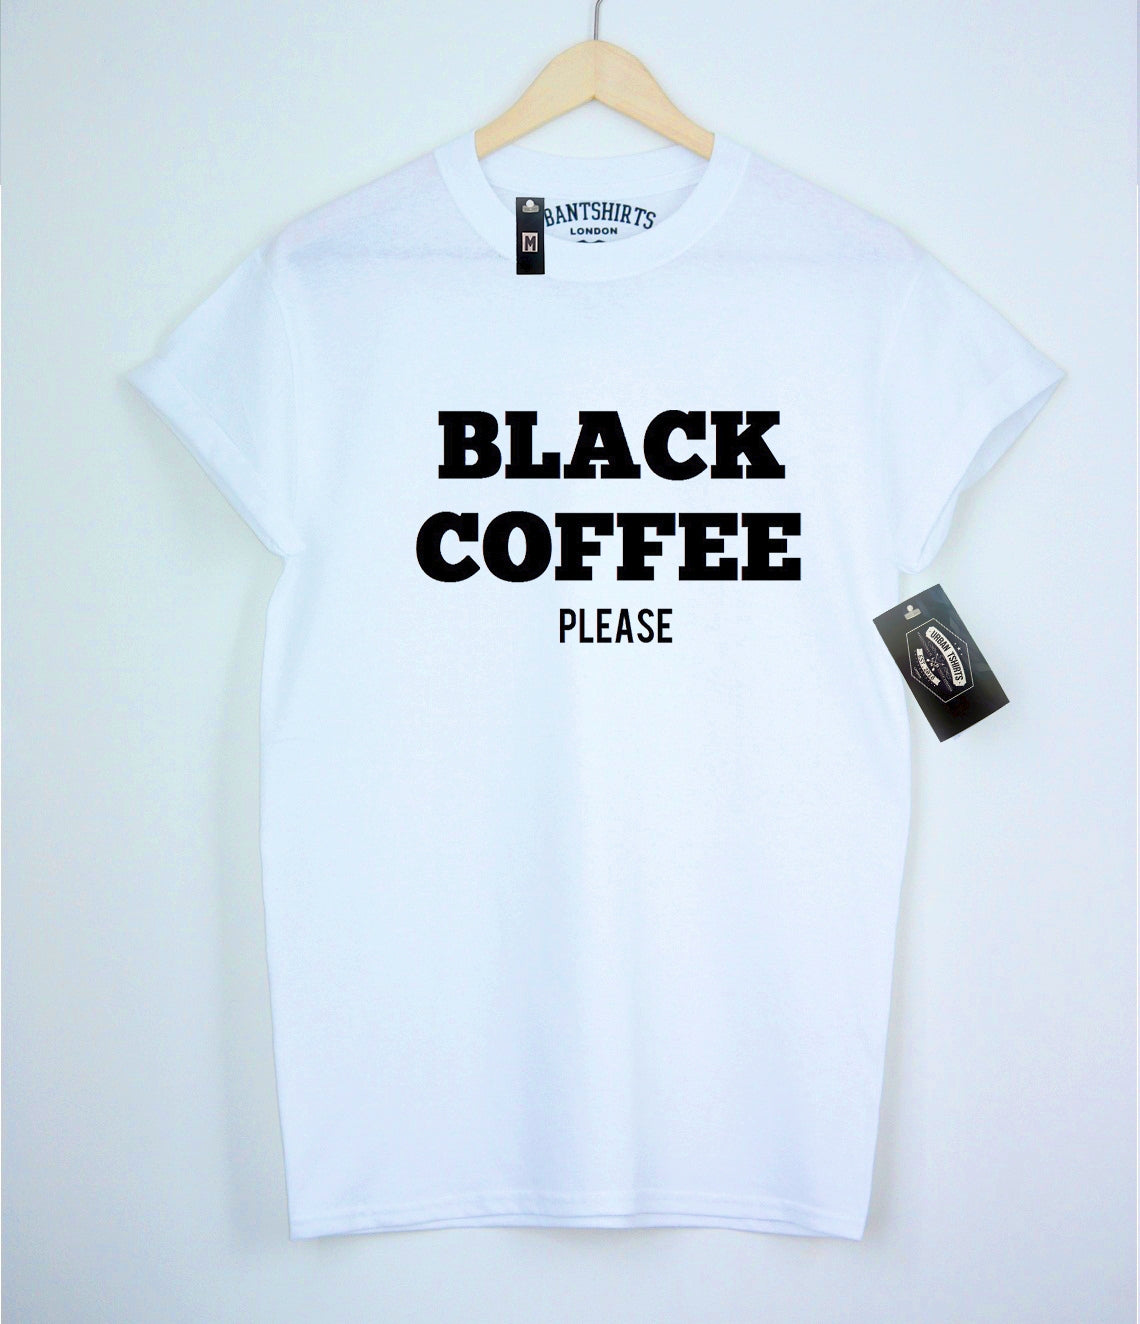 Black Coffee Please T-shirt - Urbantshirts.co.uk